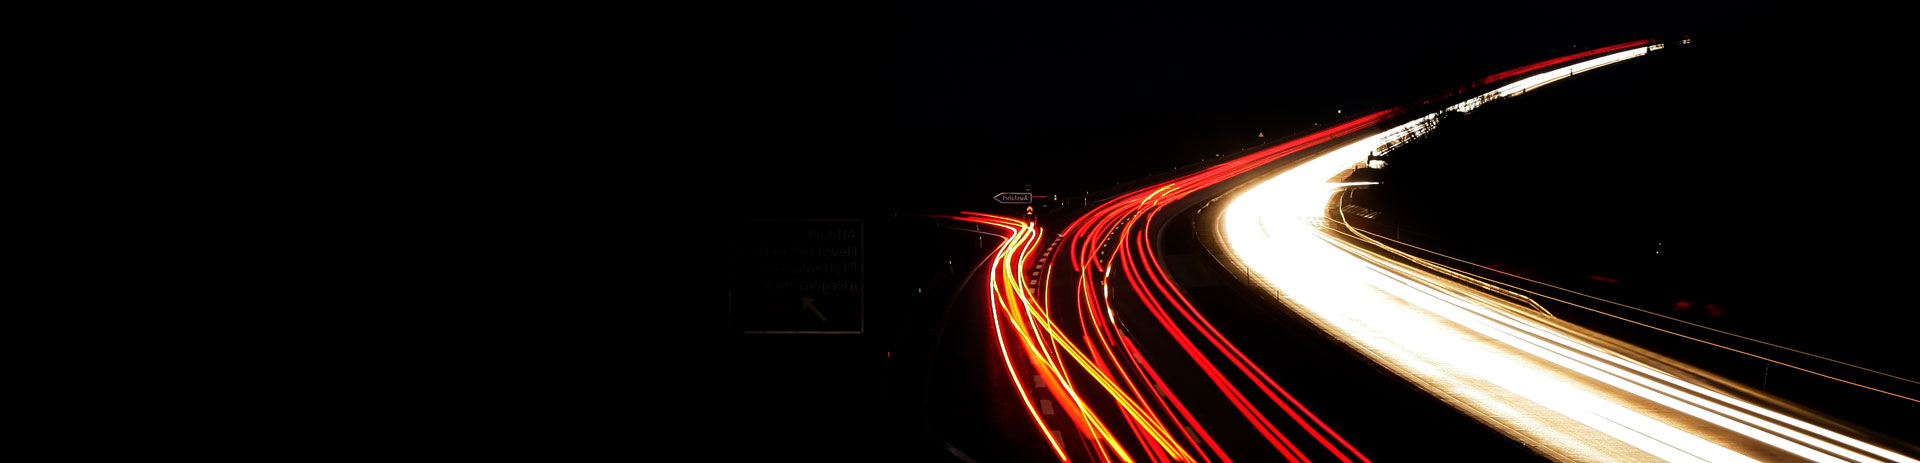 Autobahn in der Nacht mit weißen und roten Leuchtstreifen